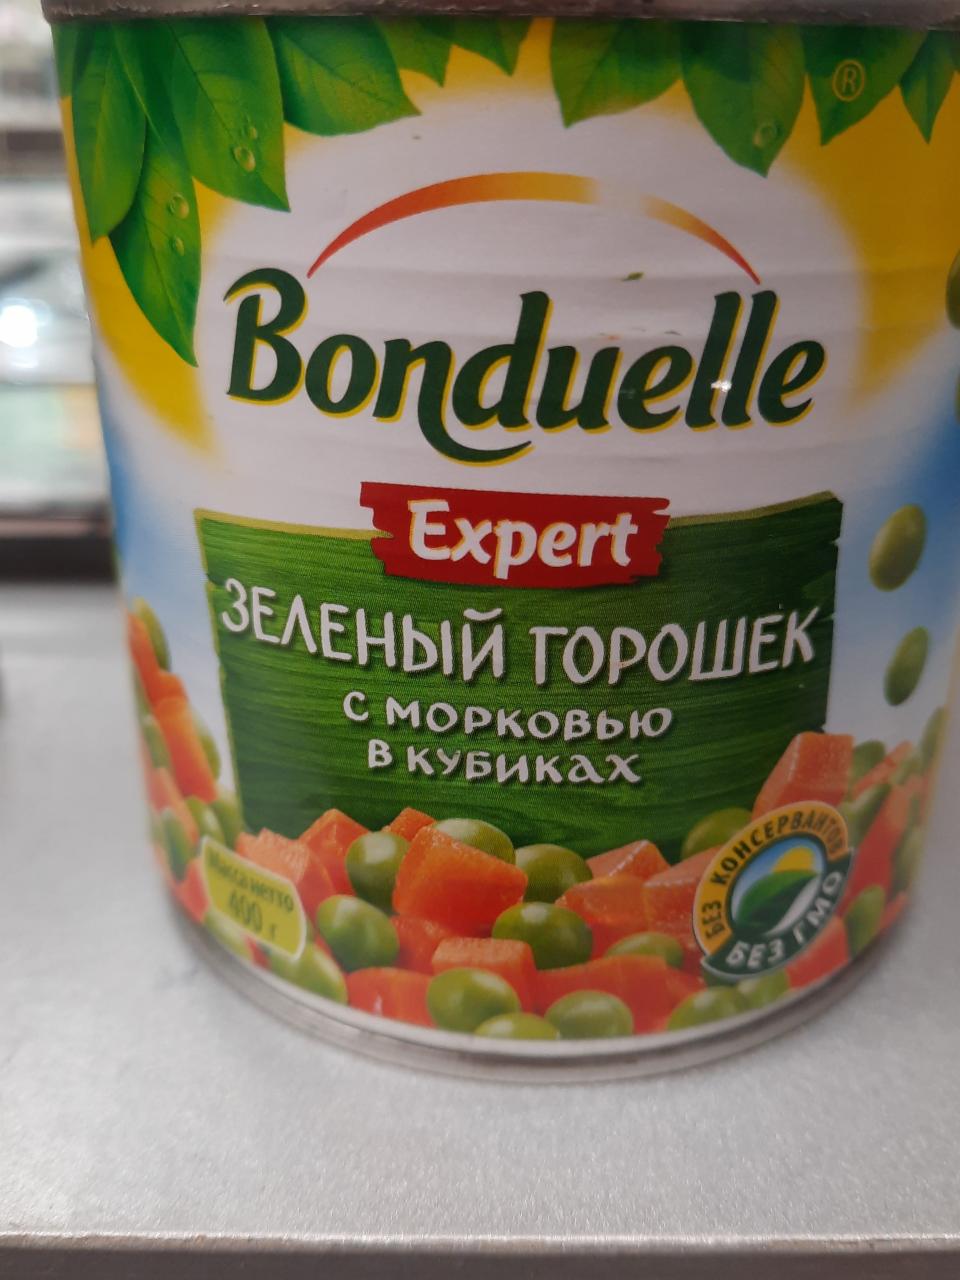 Фото - Зелёный горошек с морковью в кубиках Expert Bonduelle